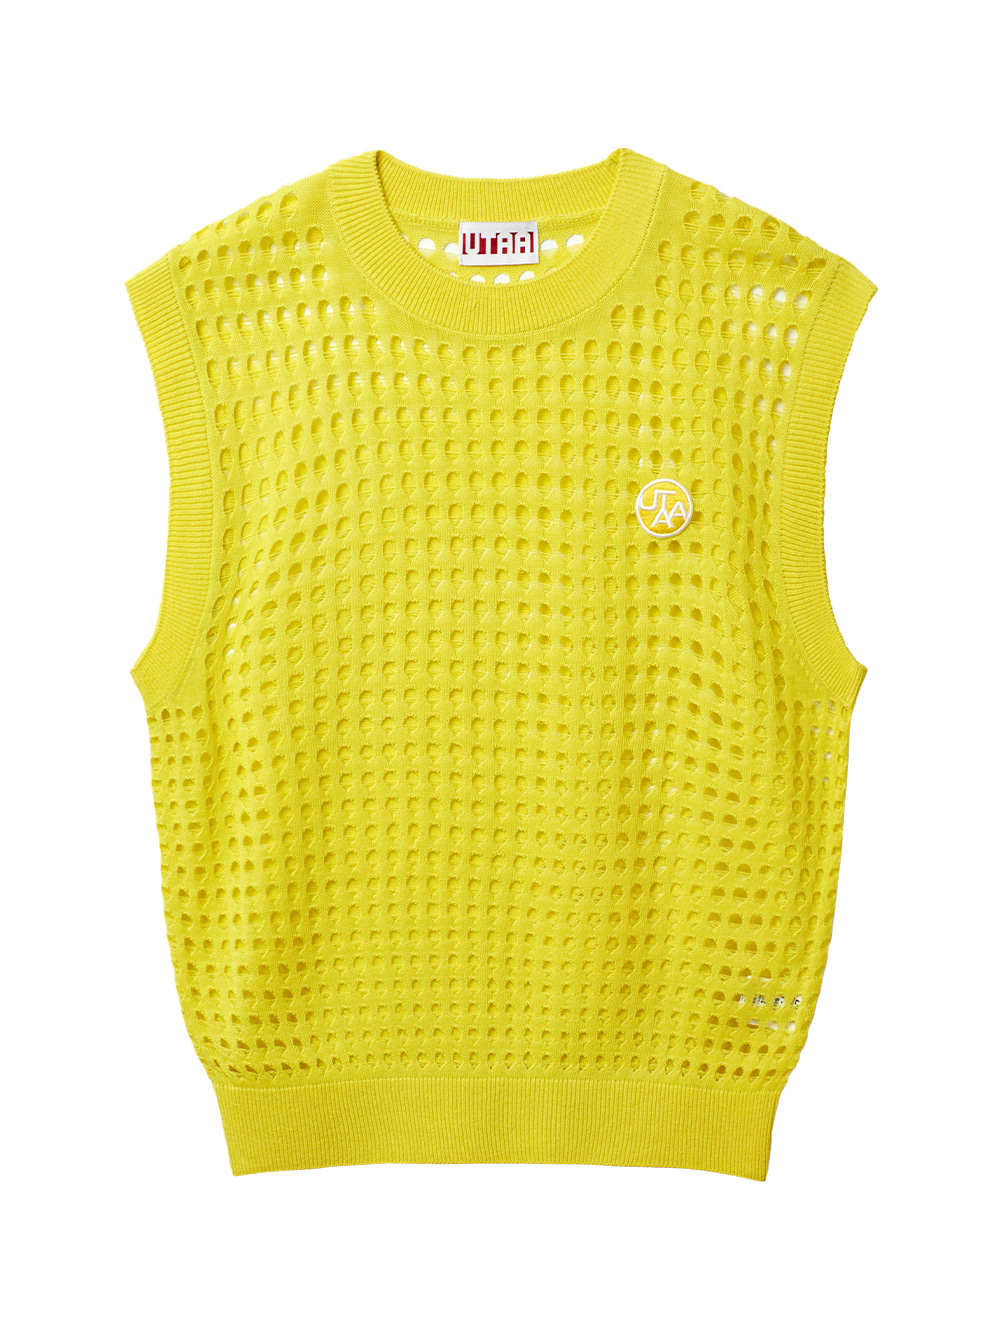 UTAA Punching Scasi Knit Vest : Yellow (UB2KVF253YE)